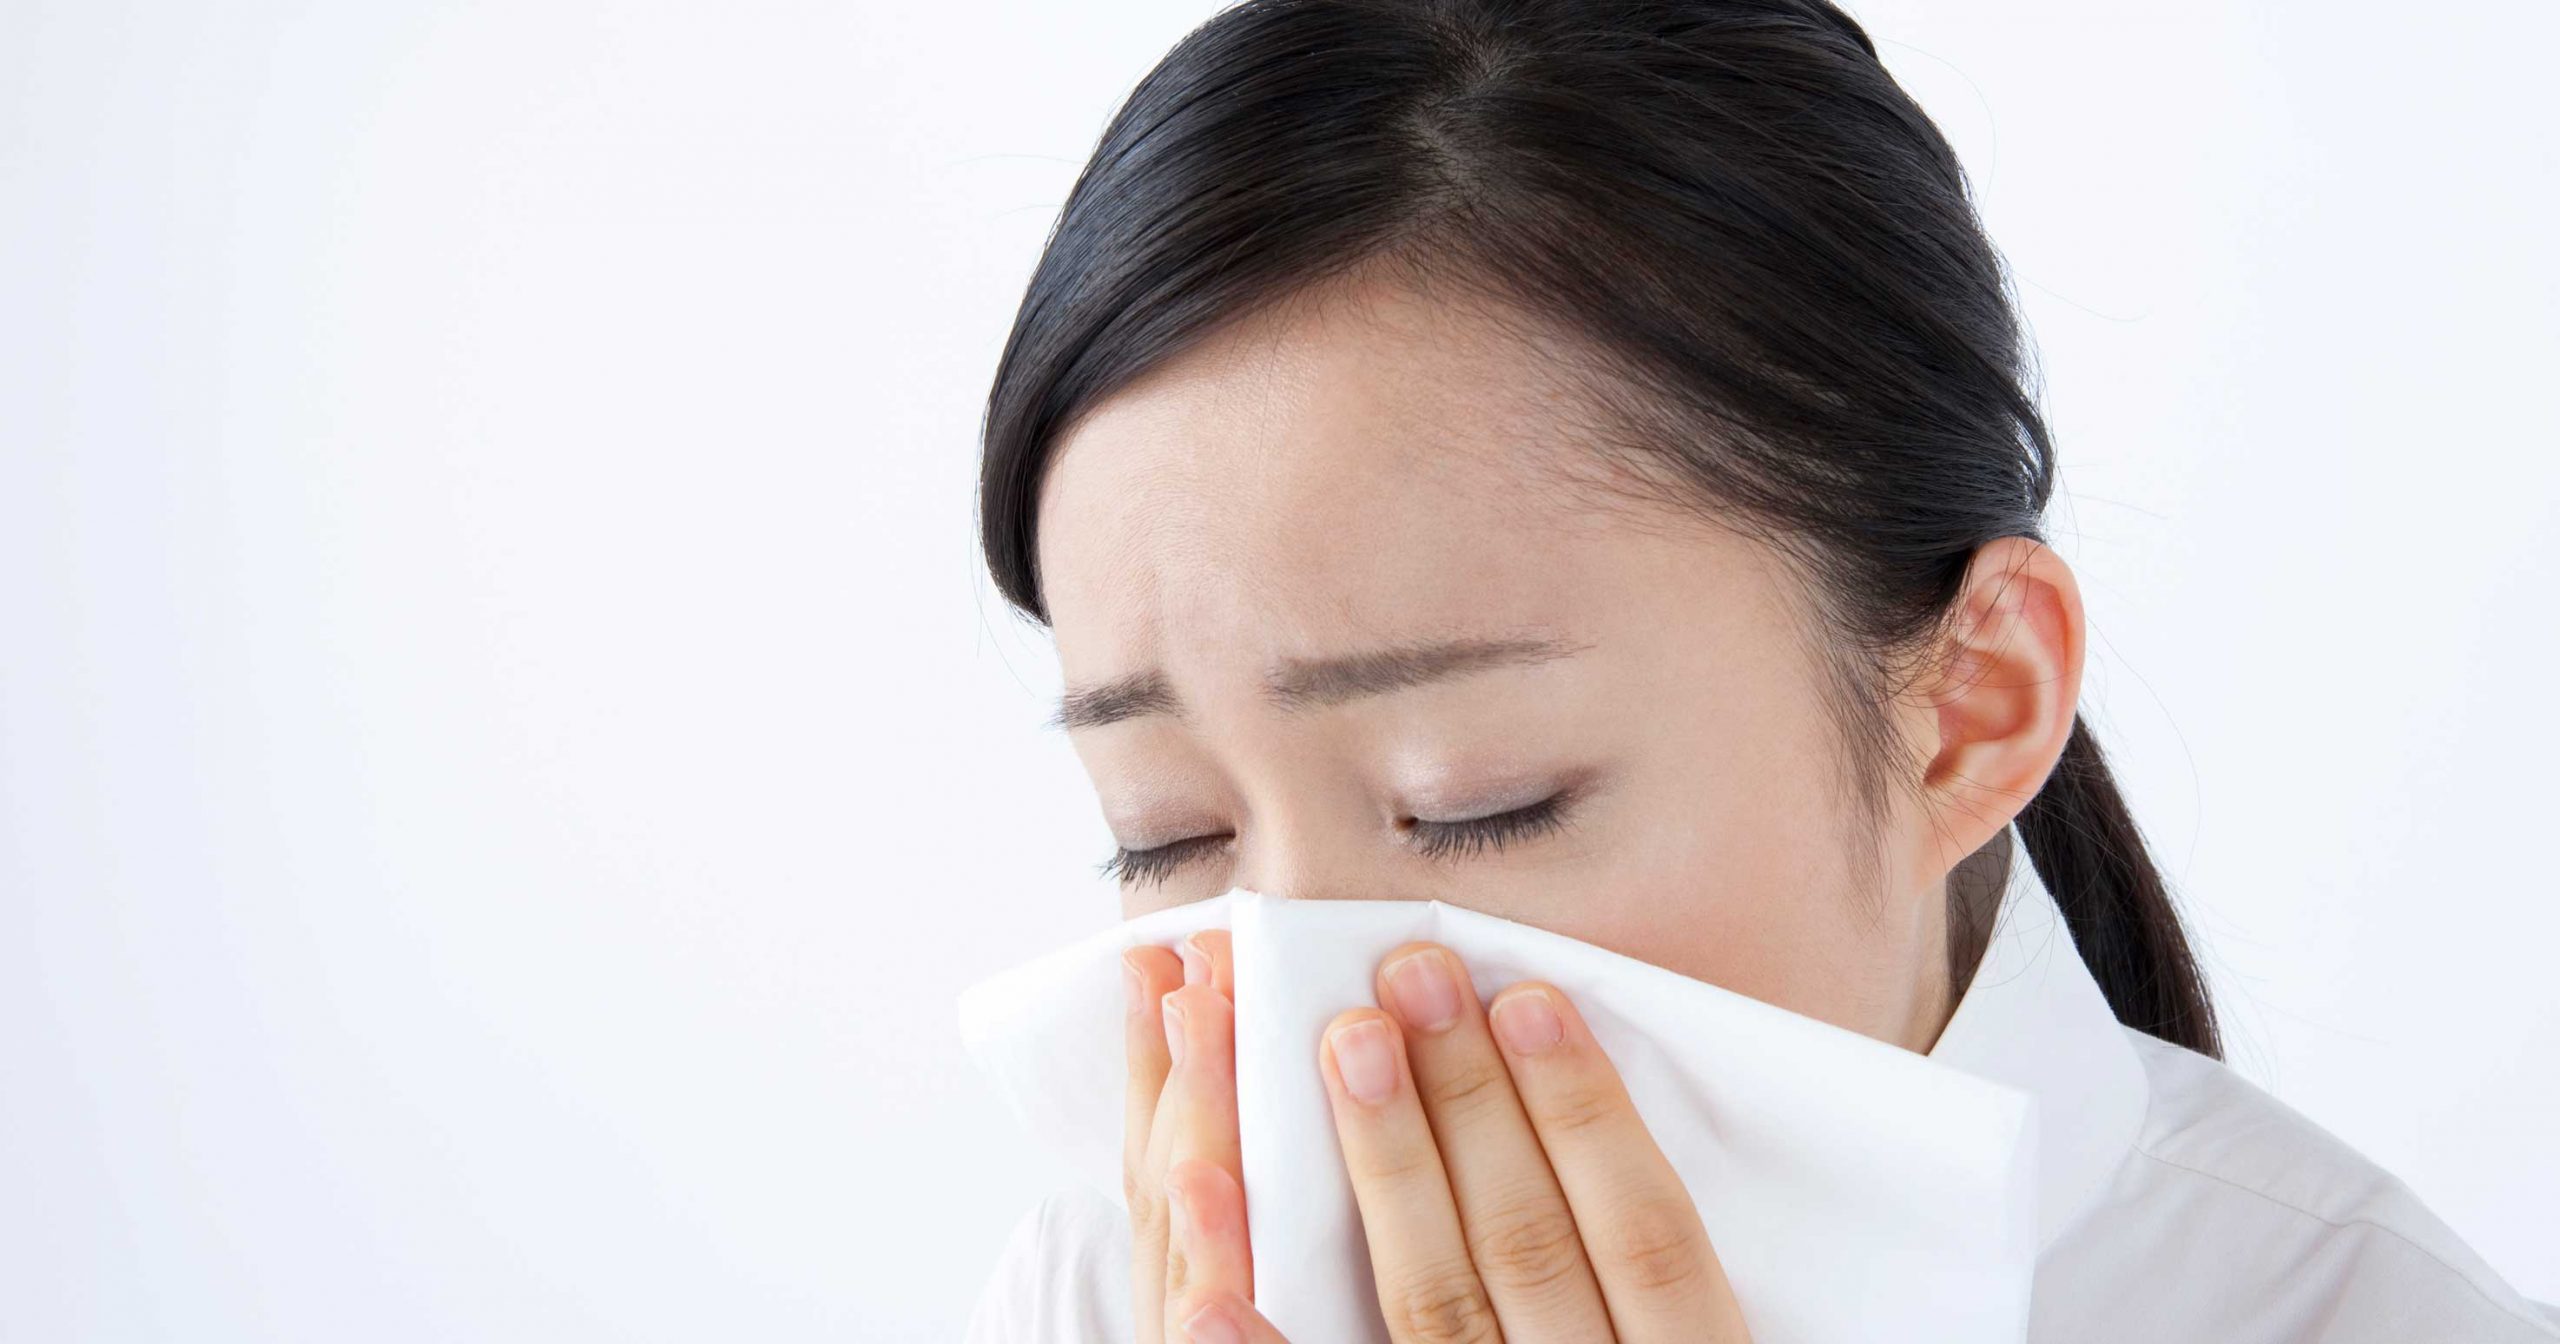 【ハウスダスト】お家でアレルギー症状が出た時の3つの対策